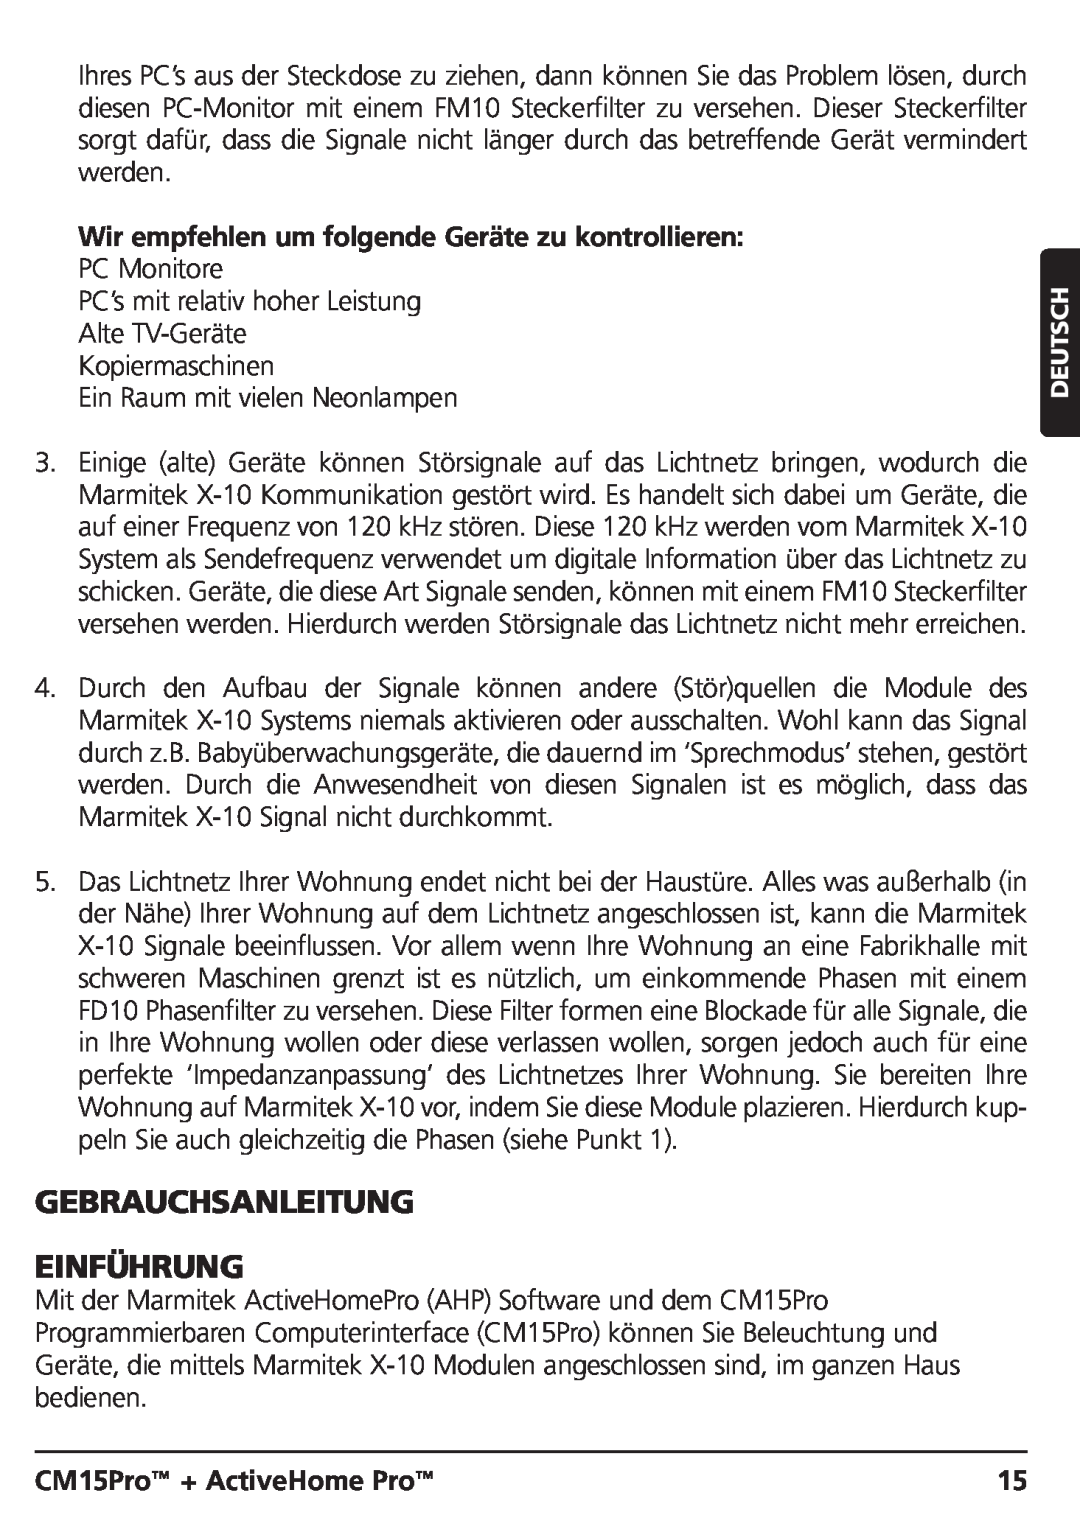 Marmitek CM15PRO manual Gebrauchsanleitung Einführung, Wir empfehlen um folgende Geräte zu kontrollieren, Deutsch 